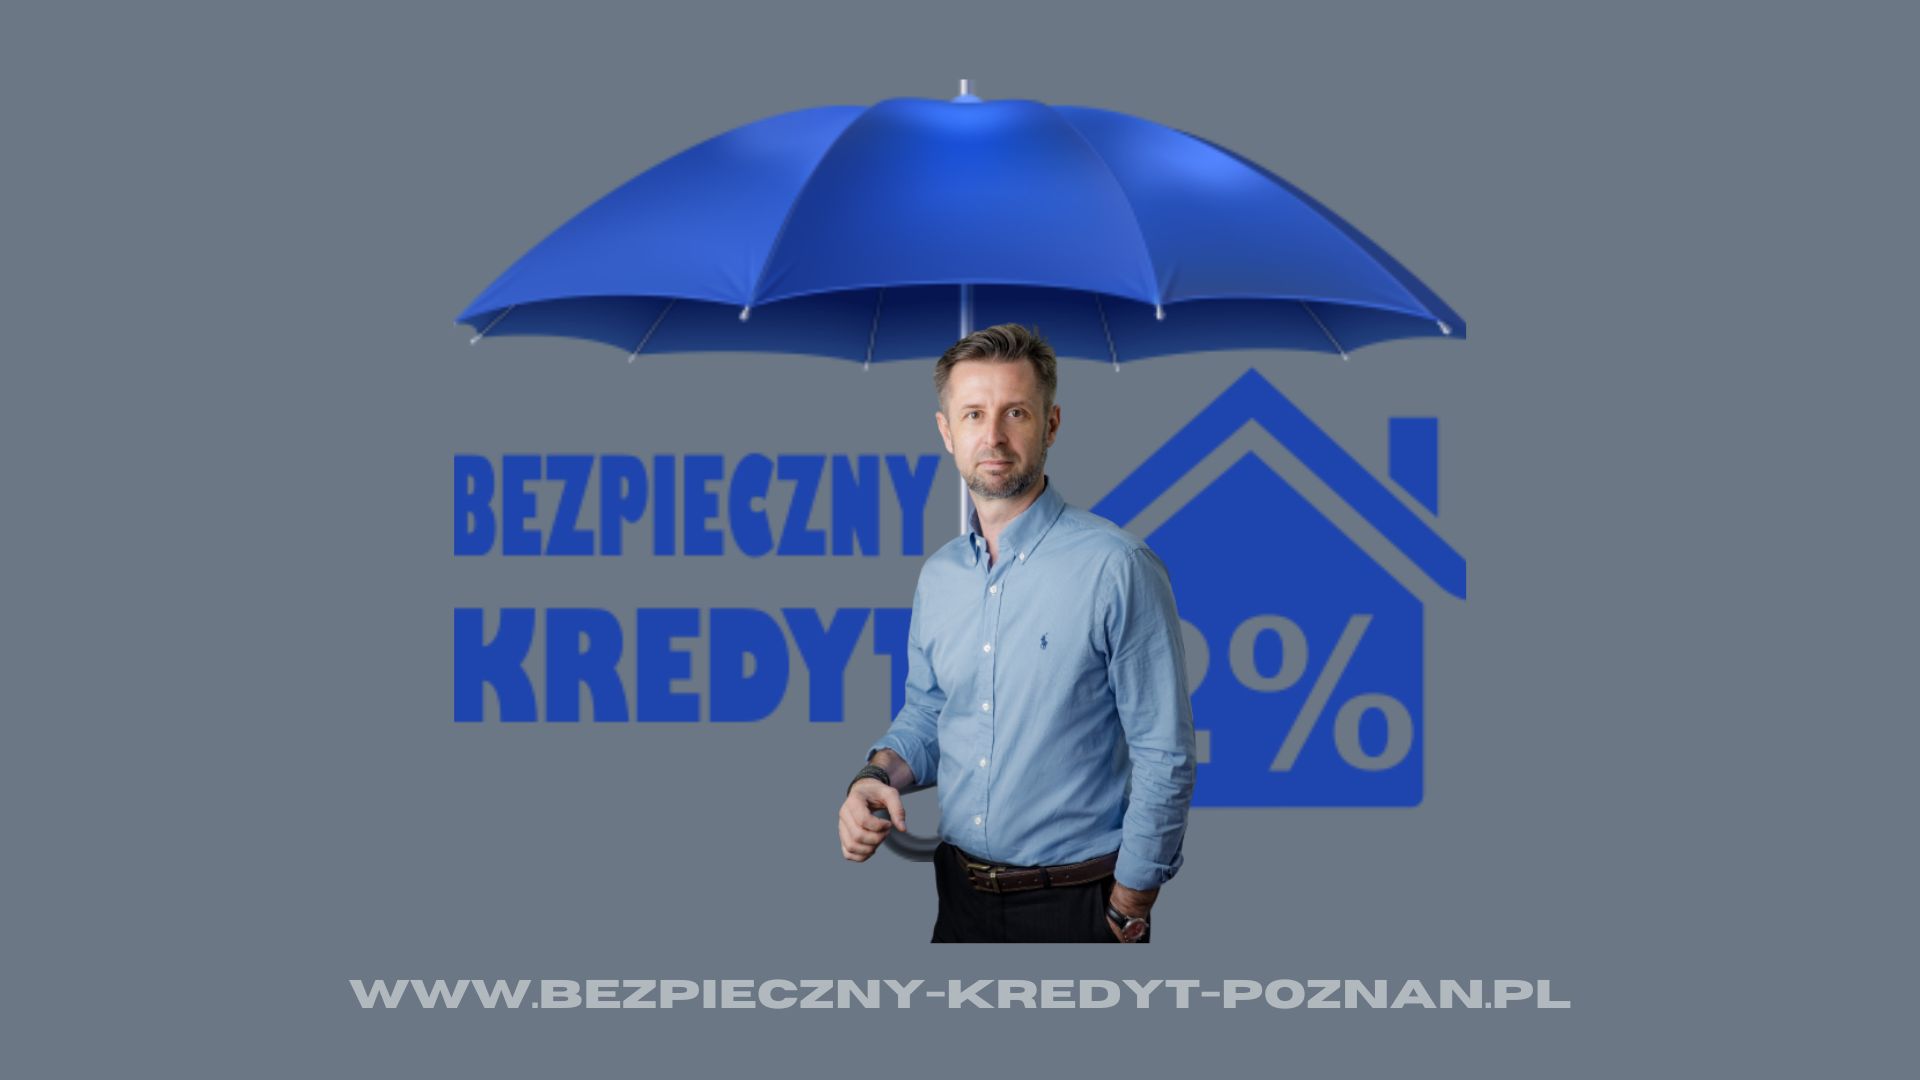 Pośrednik kredytowy Bezpieczny Kredyt 2% - www.bezpieczny-kredyt-poznan.pl